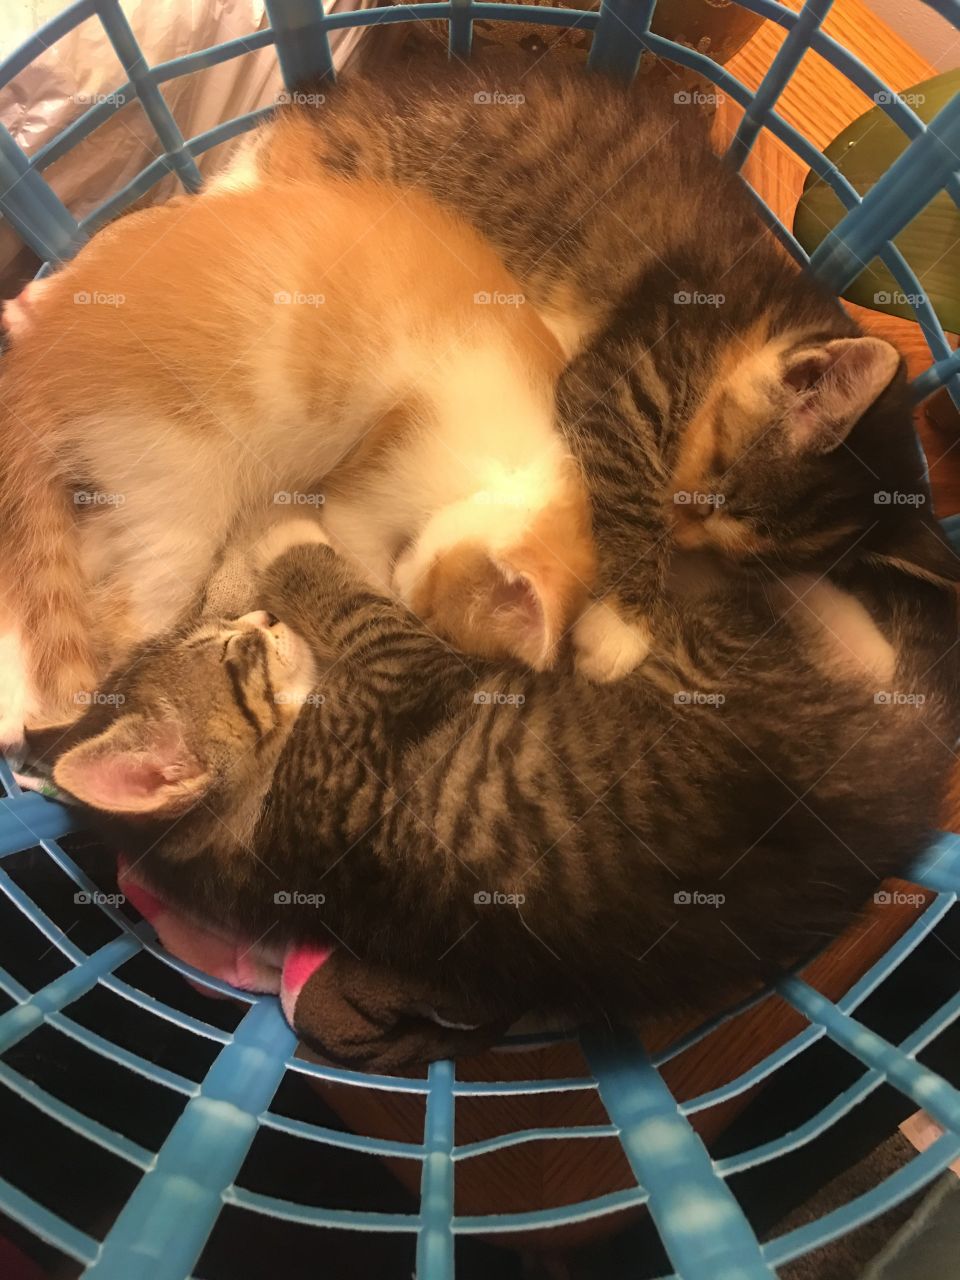 Kittens in a basket 